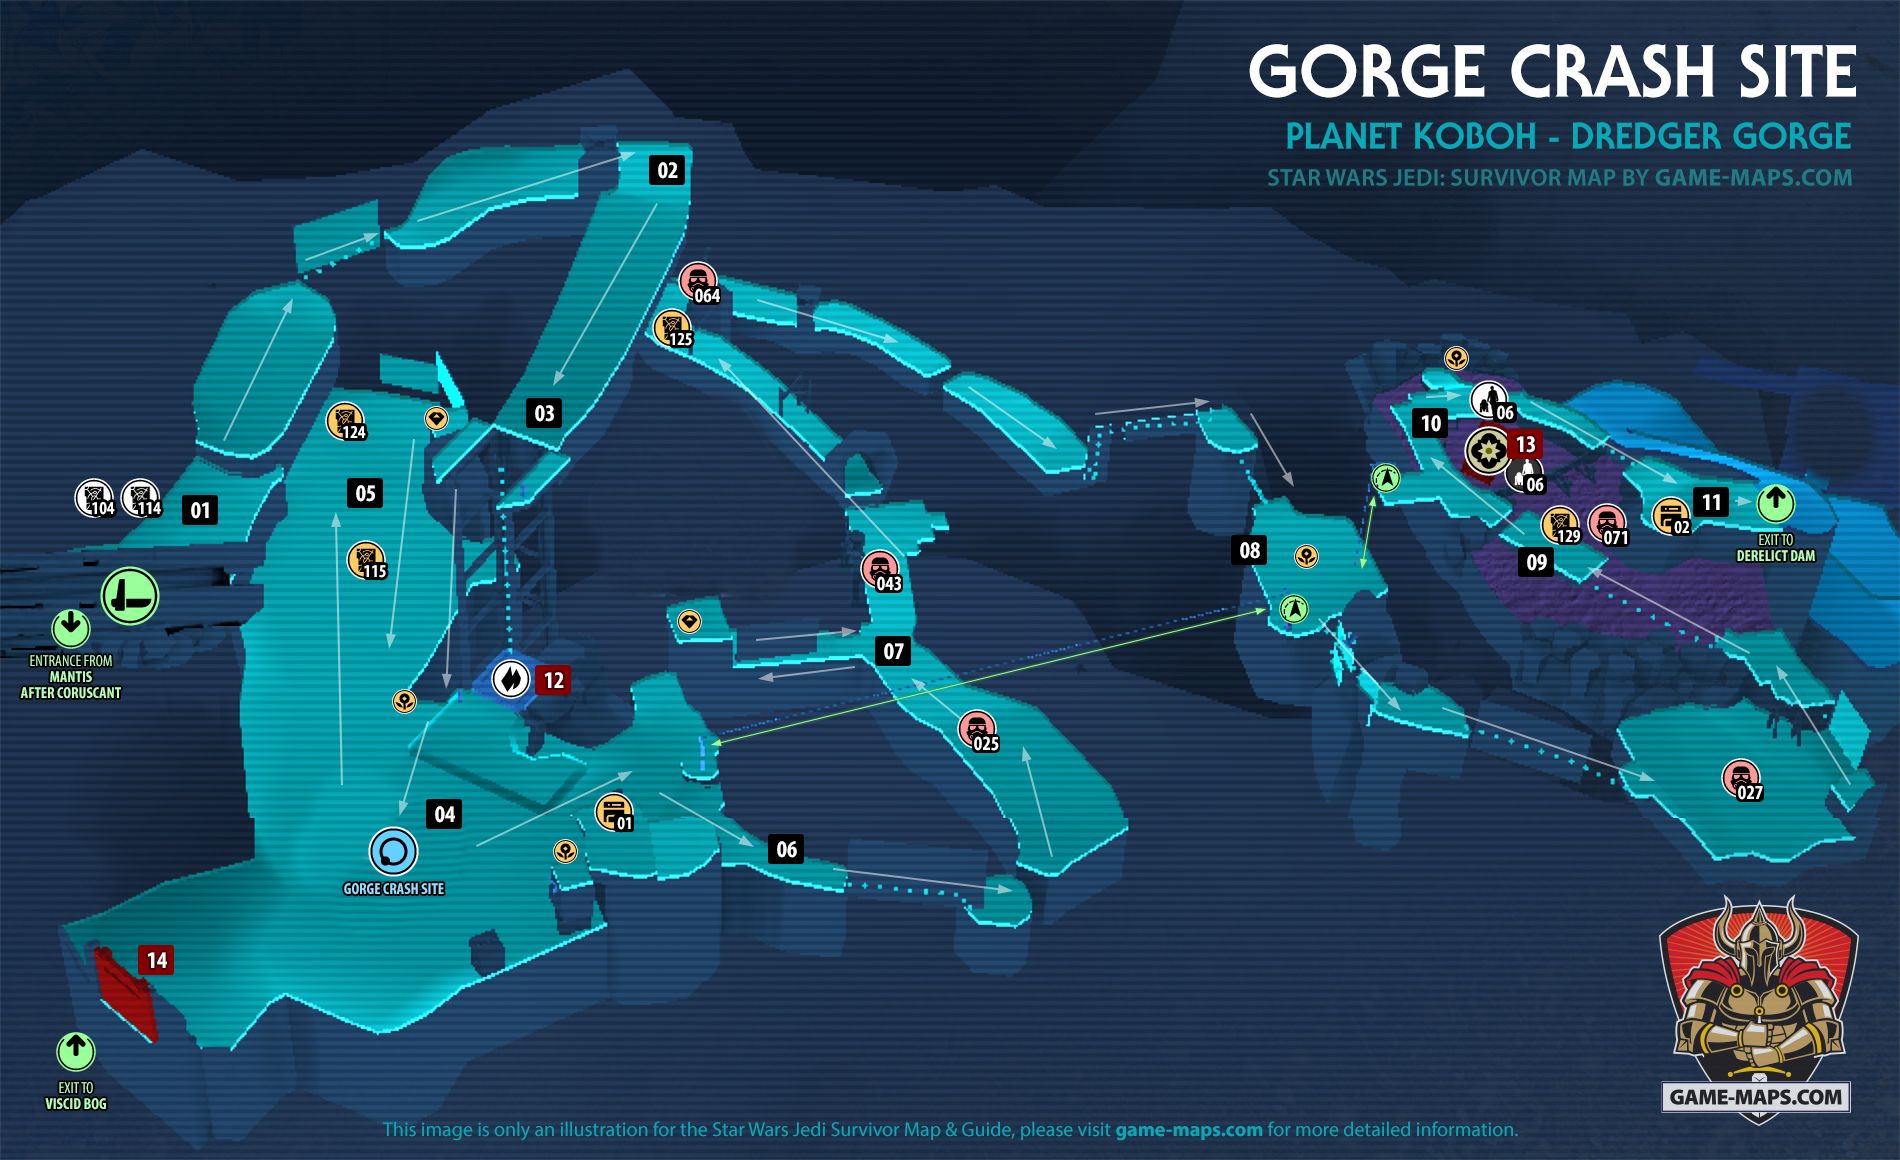 Gorge Crash Site Map Koboh Planet for Star Wars Jedi Survivor